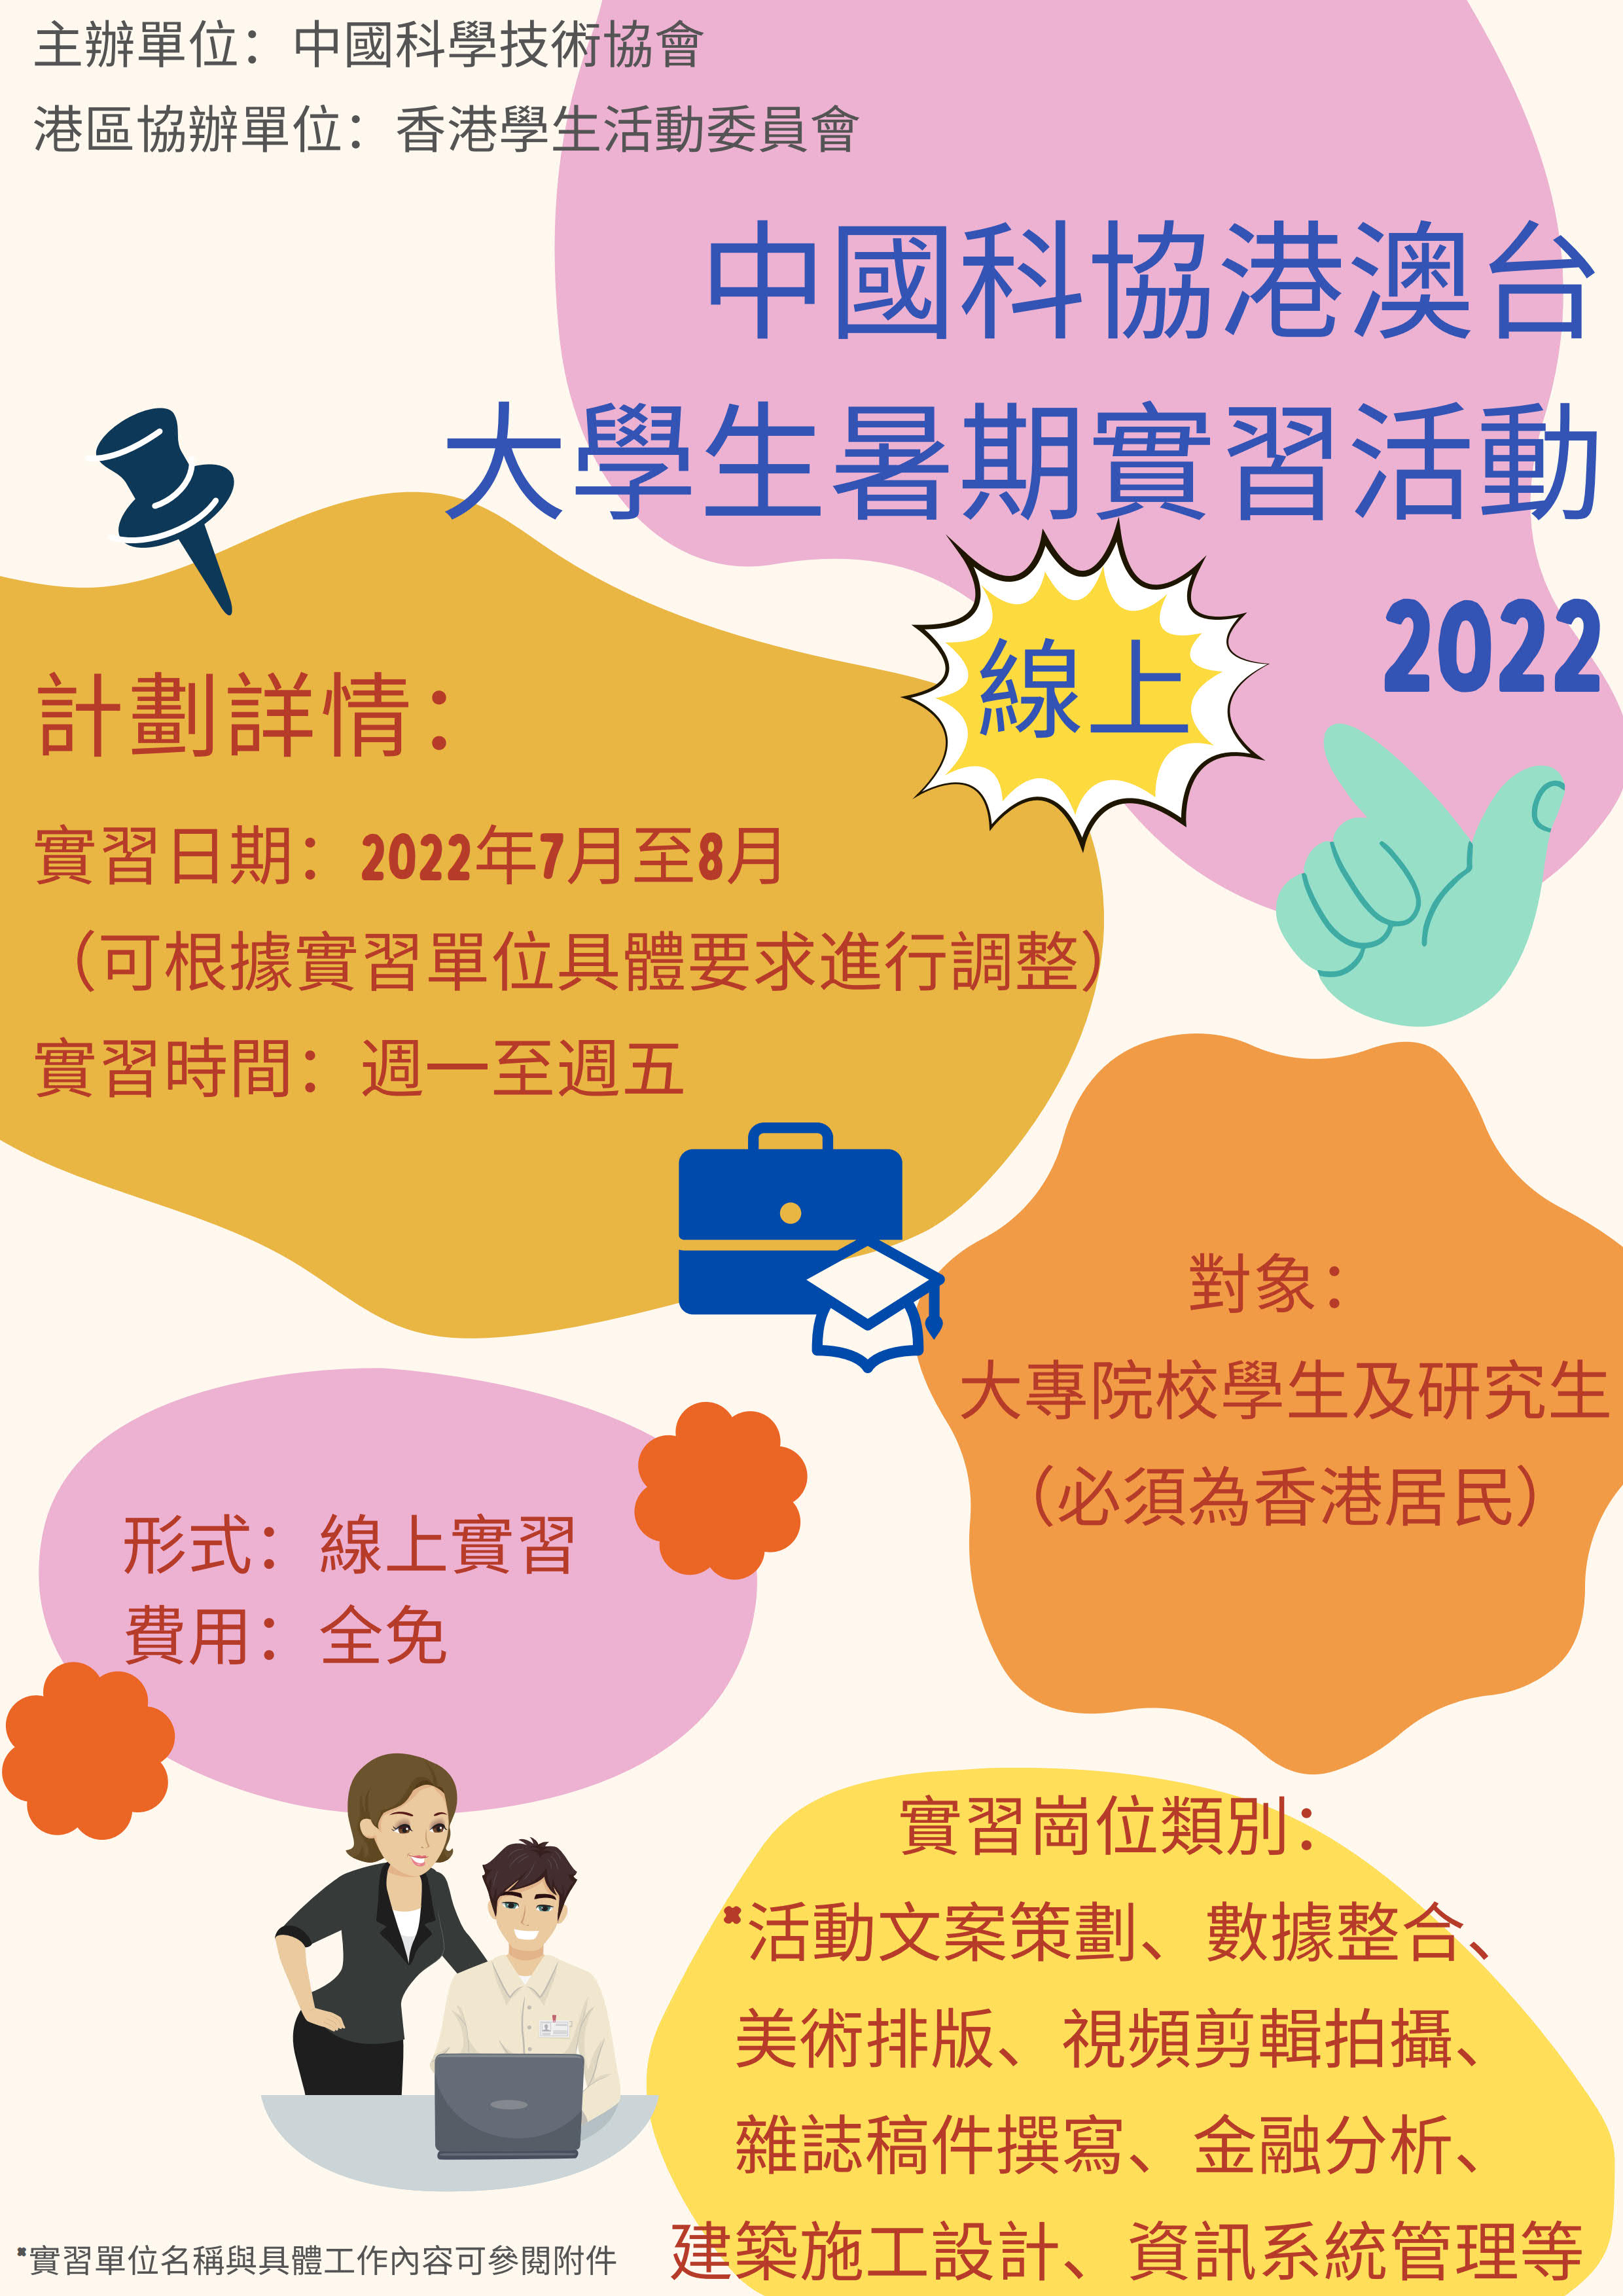 中國科協港澳台大學生暑期實習活動2022